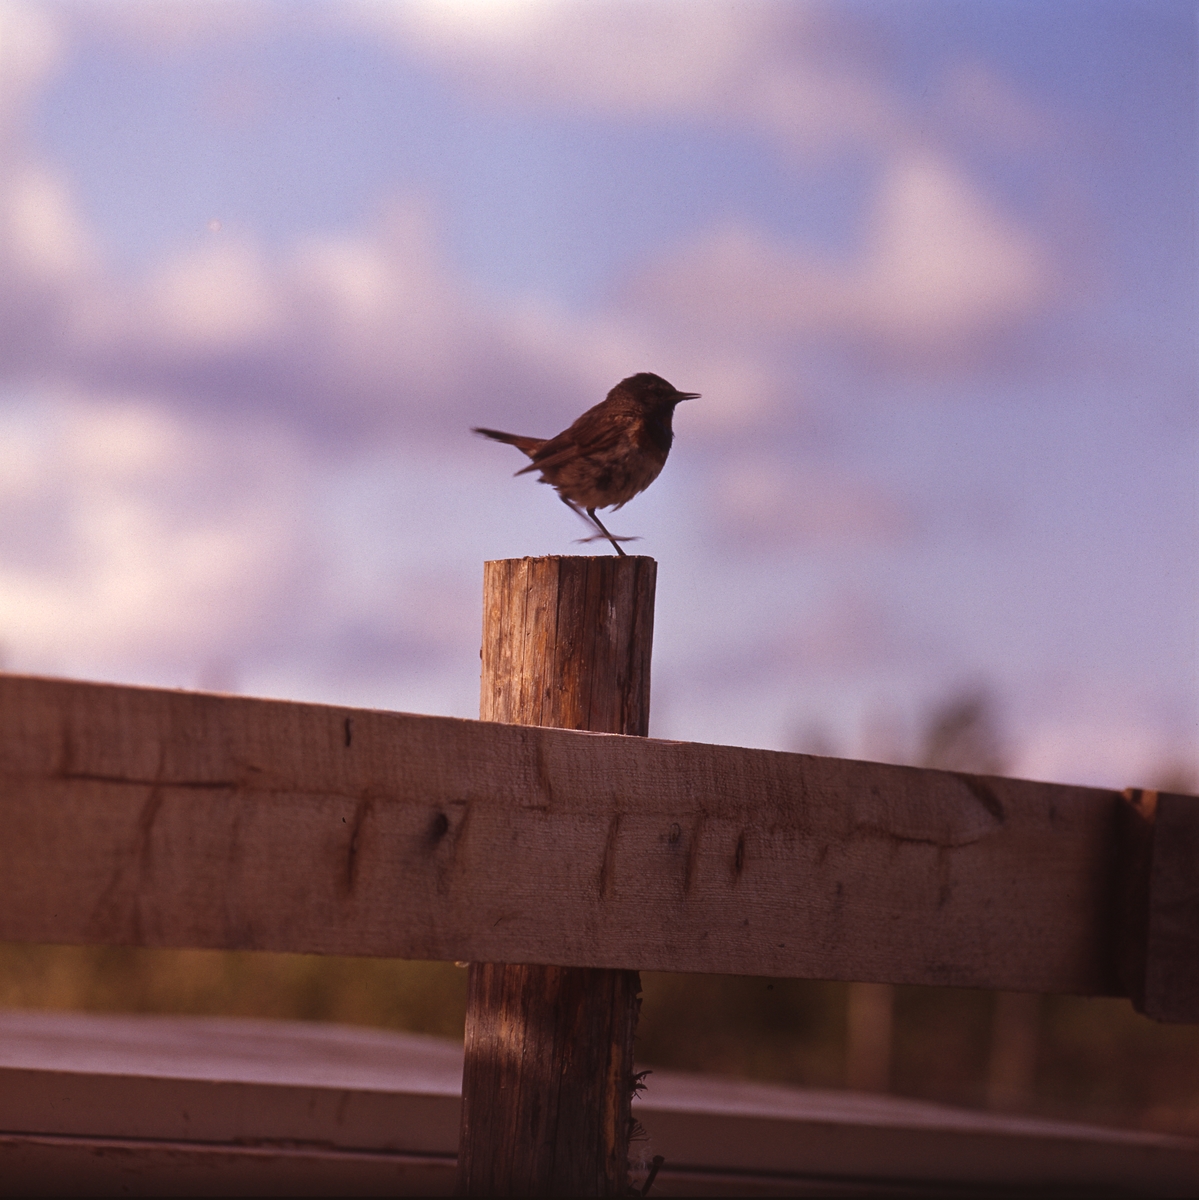 Liten fågel sitter på en staketstolpe. Blå himmel med moln i bakgrunden.